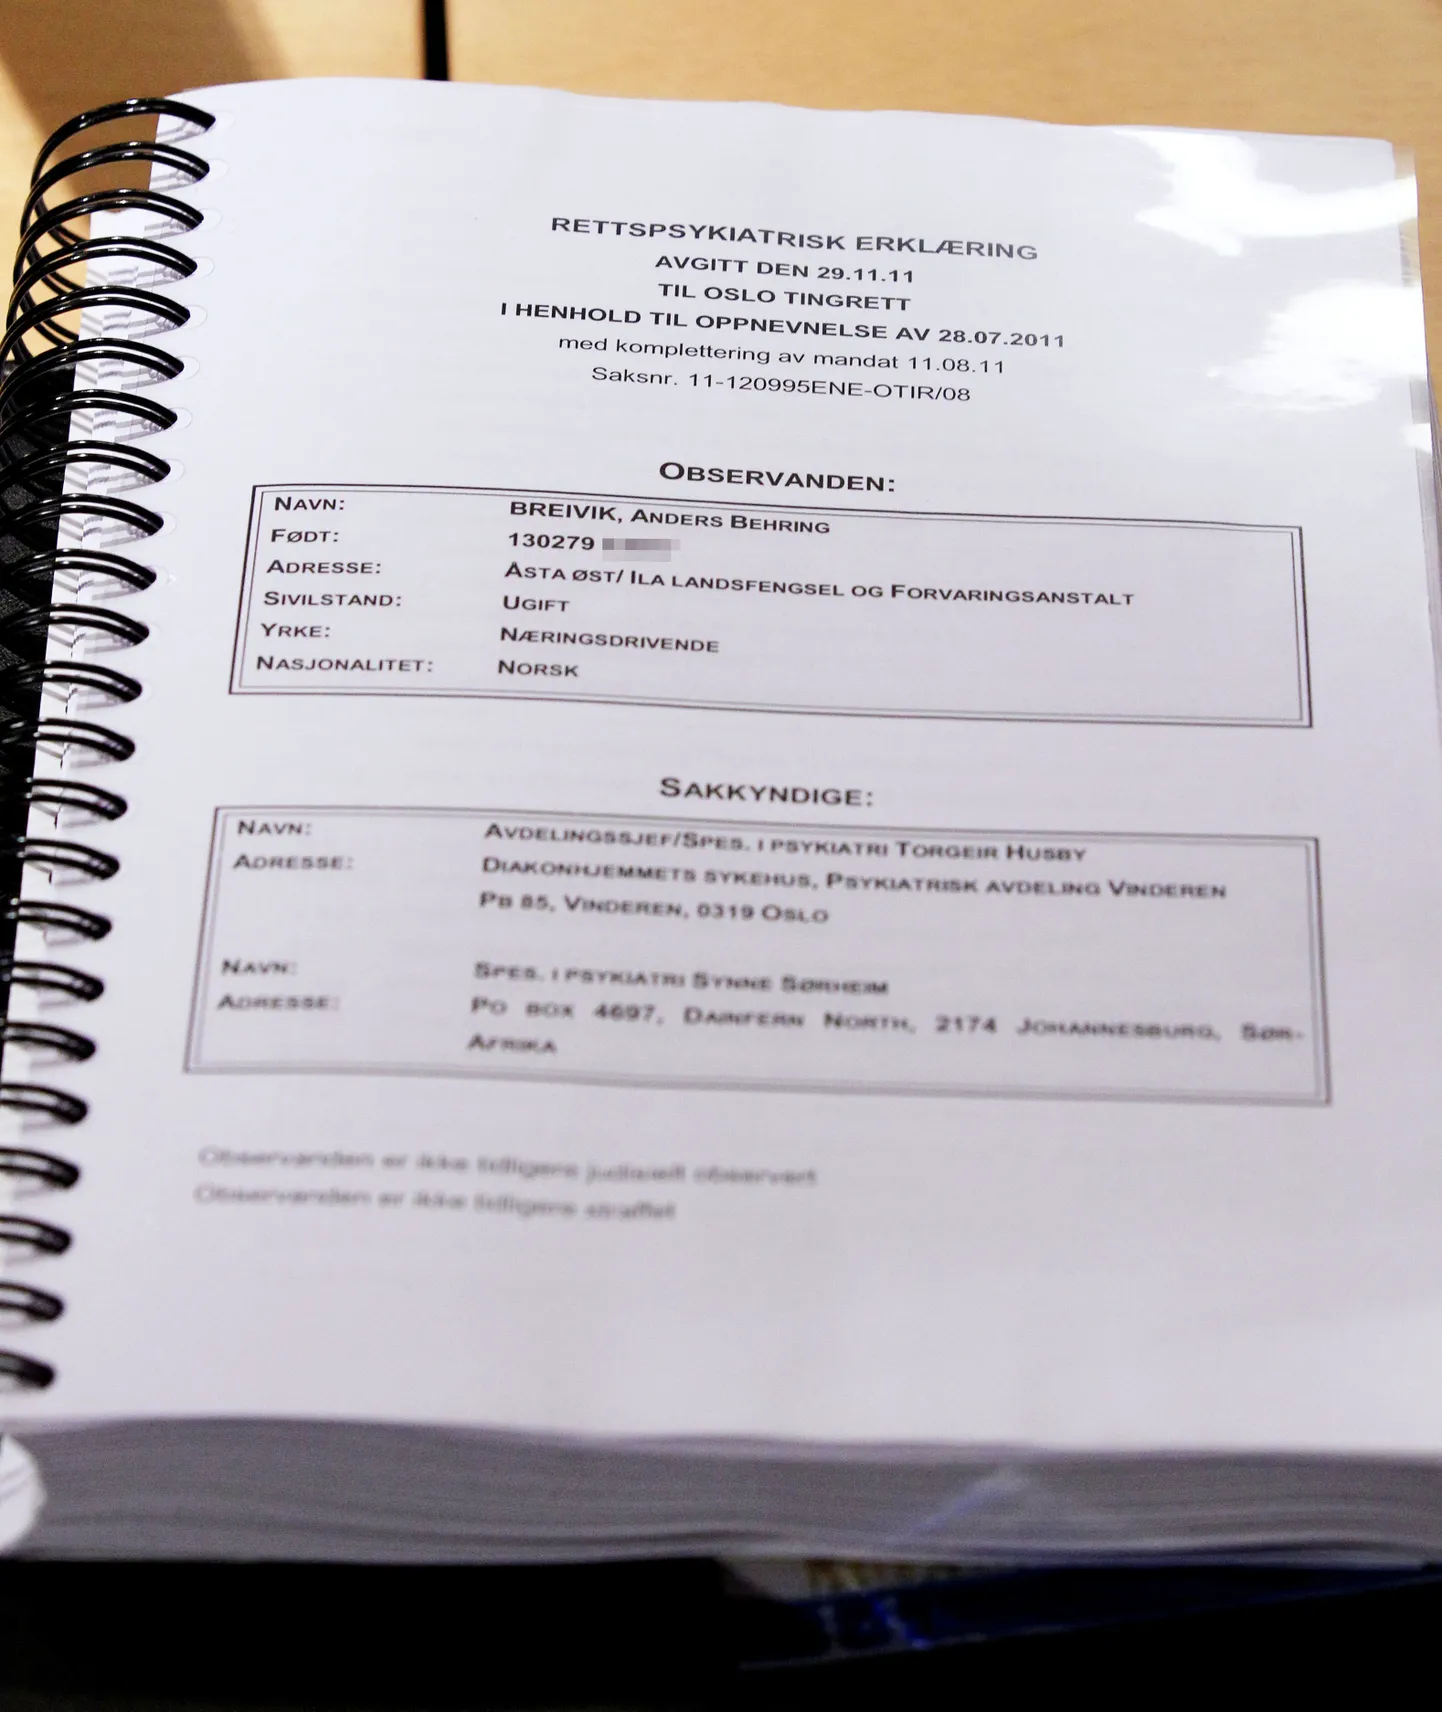 Möödunud aastal Anders Behring Breivikile tehtud kohtupsühhiaatrilise ekpertiisi raport